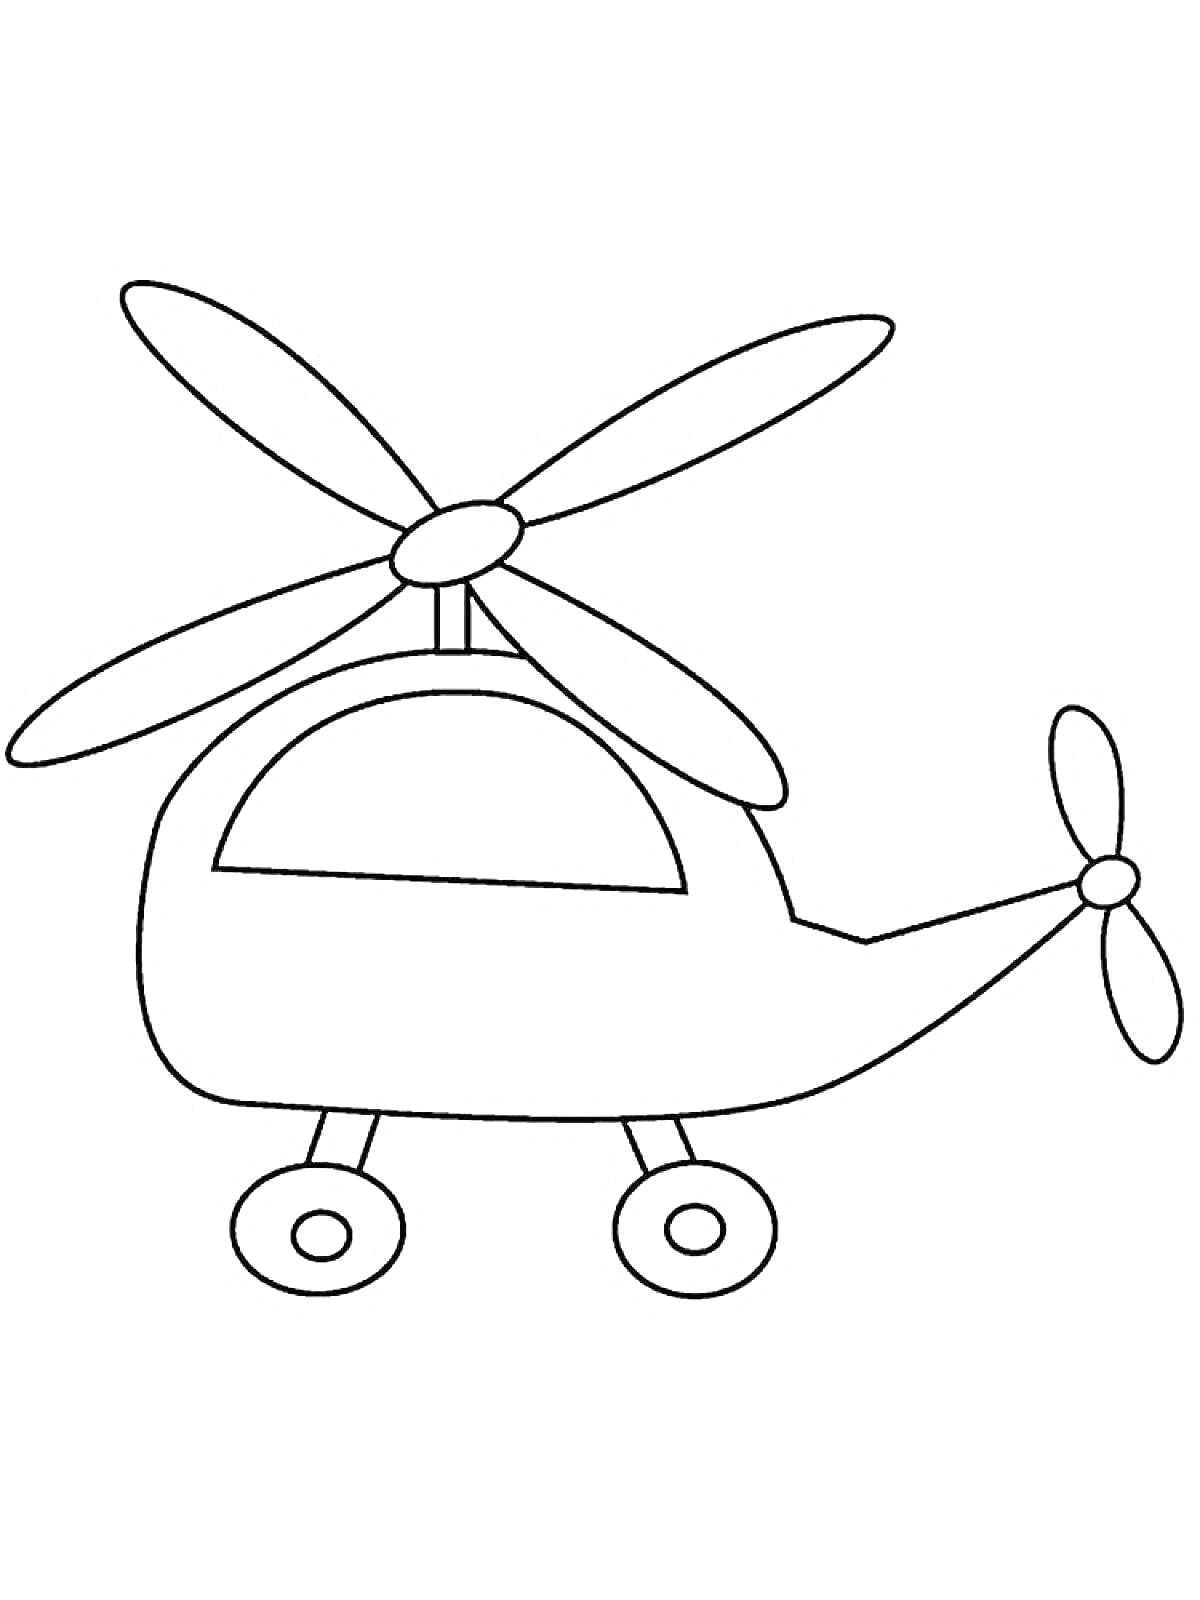 Раскраска Вертолет с двумя пропеллерами и колесами